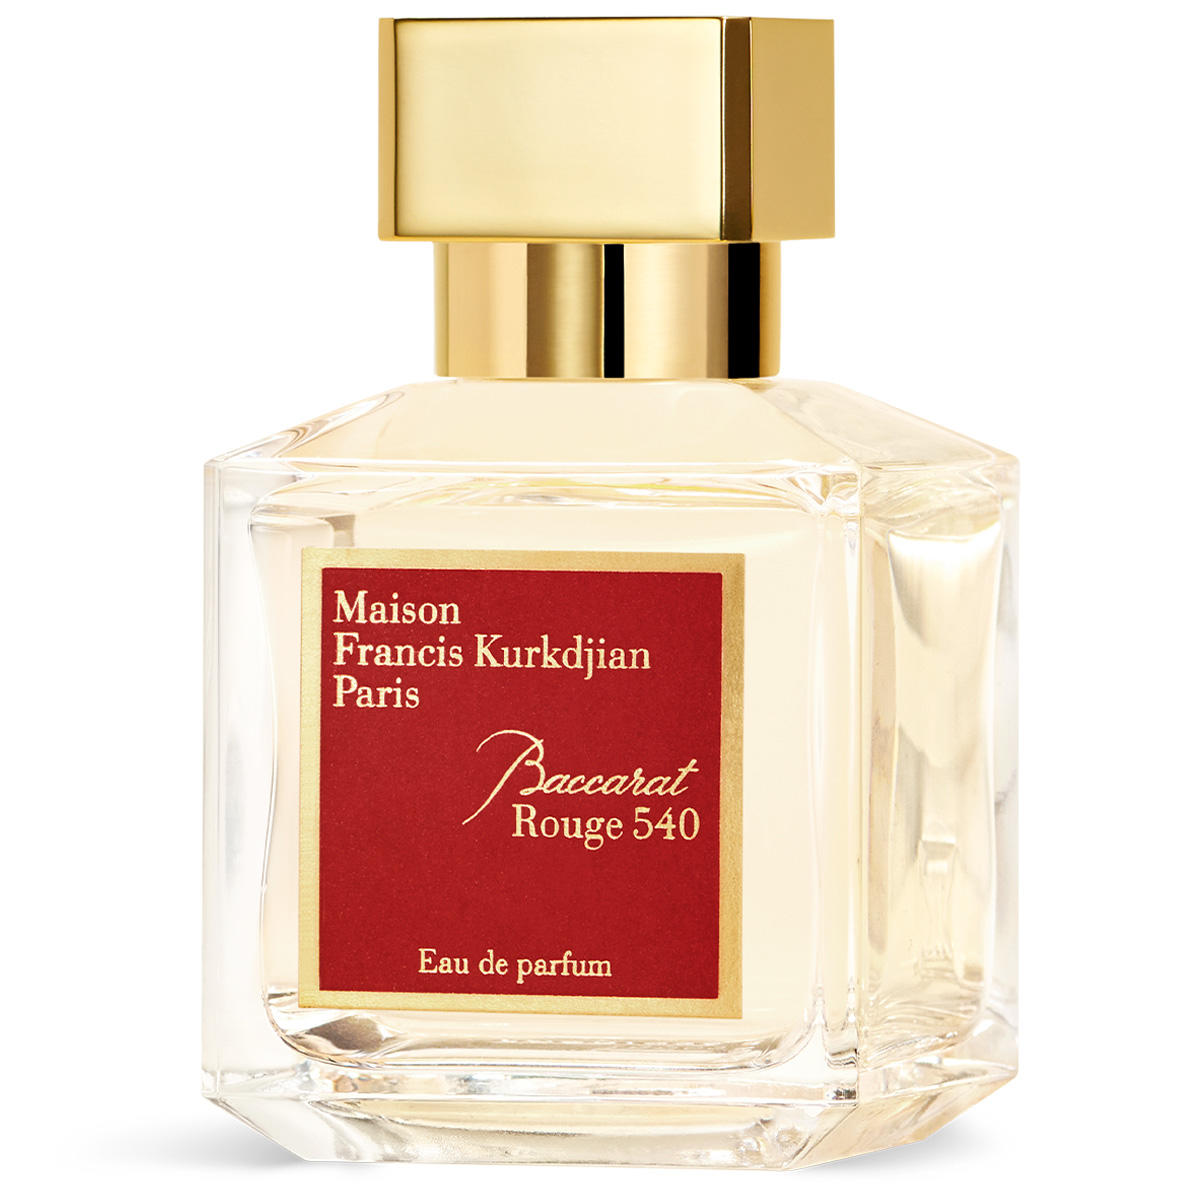 Maison Francis Kurkdjian Paris Baccarat Rouge 540 Eau de Parfum 70 ml - 3